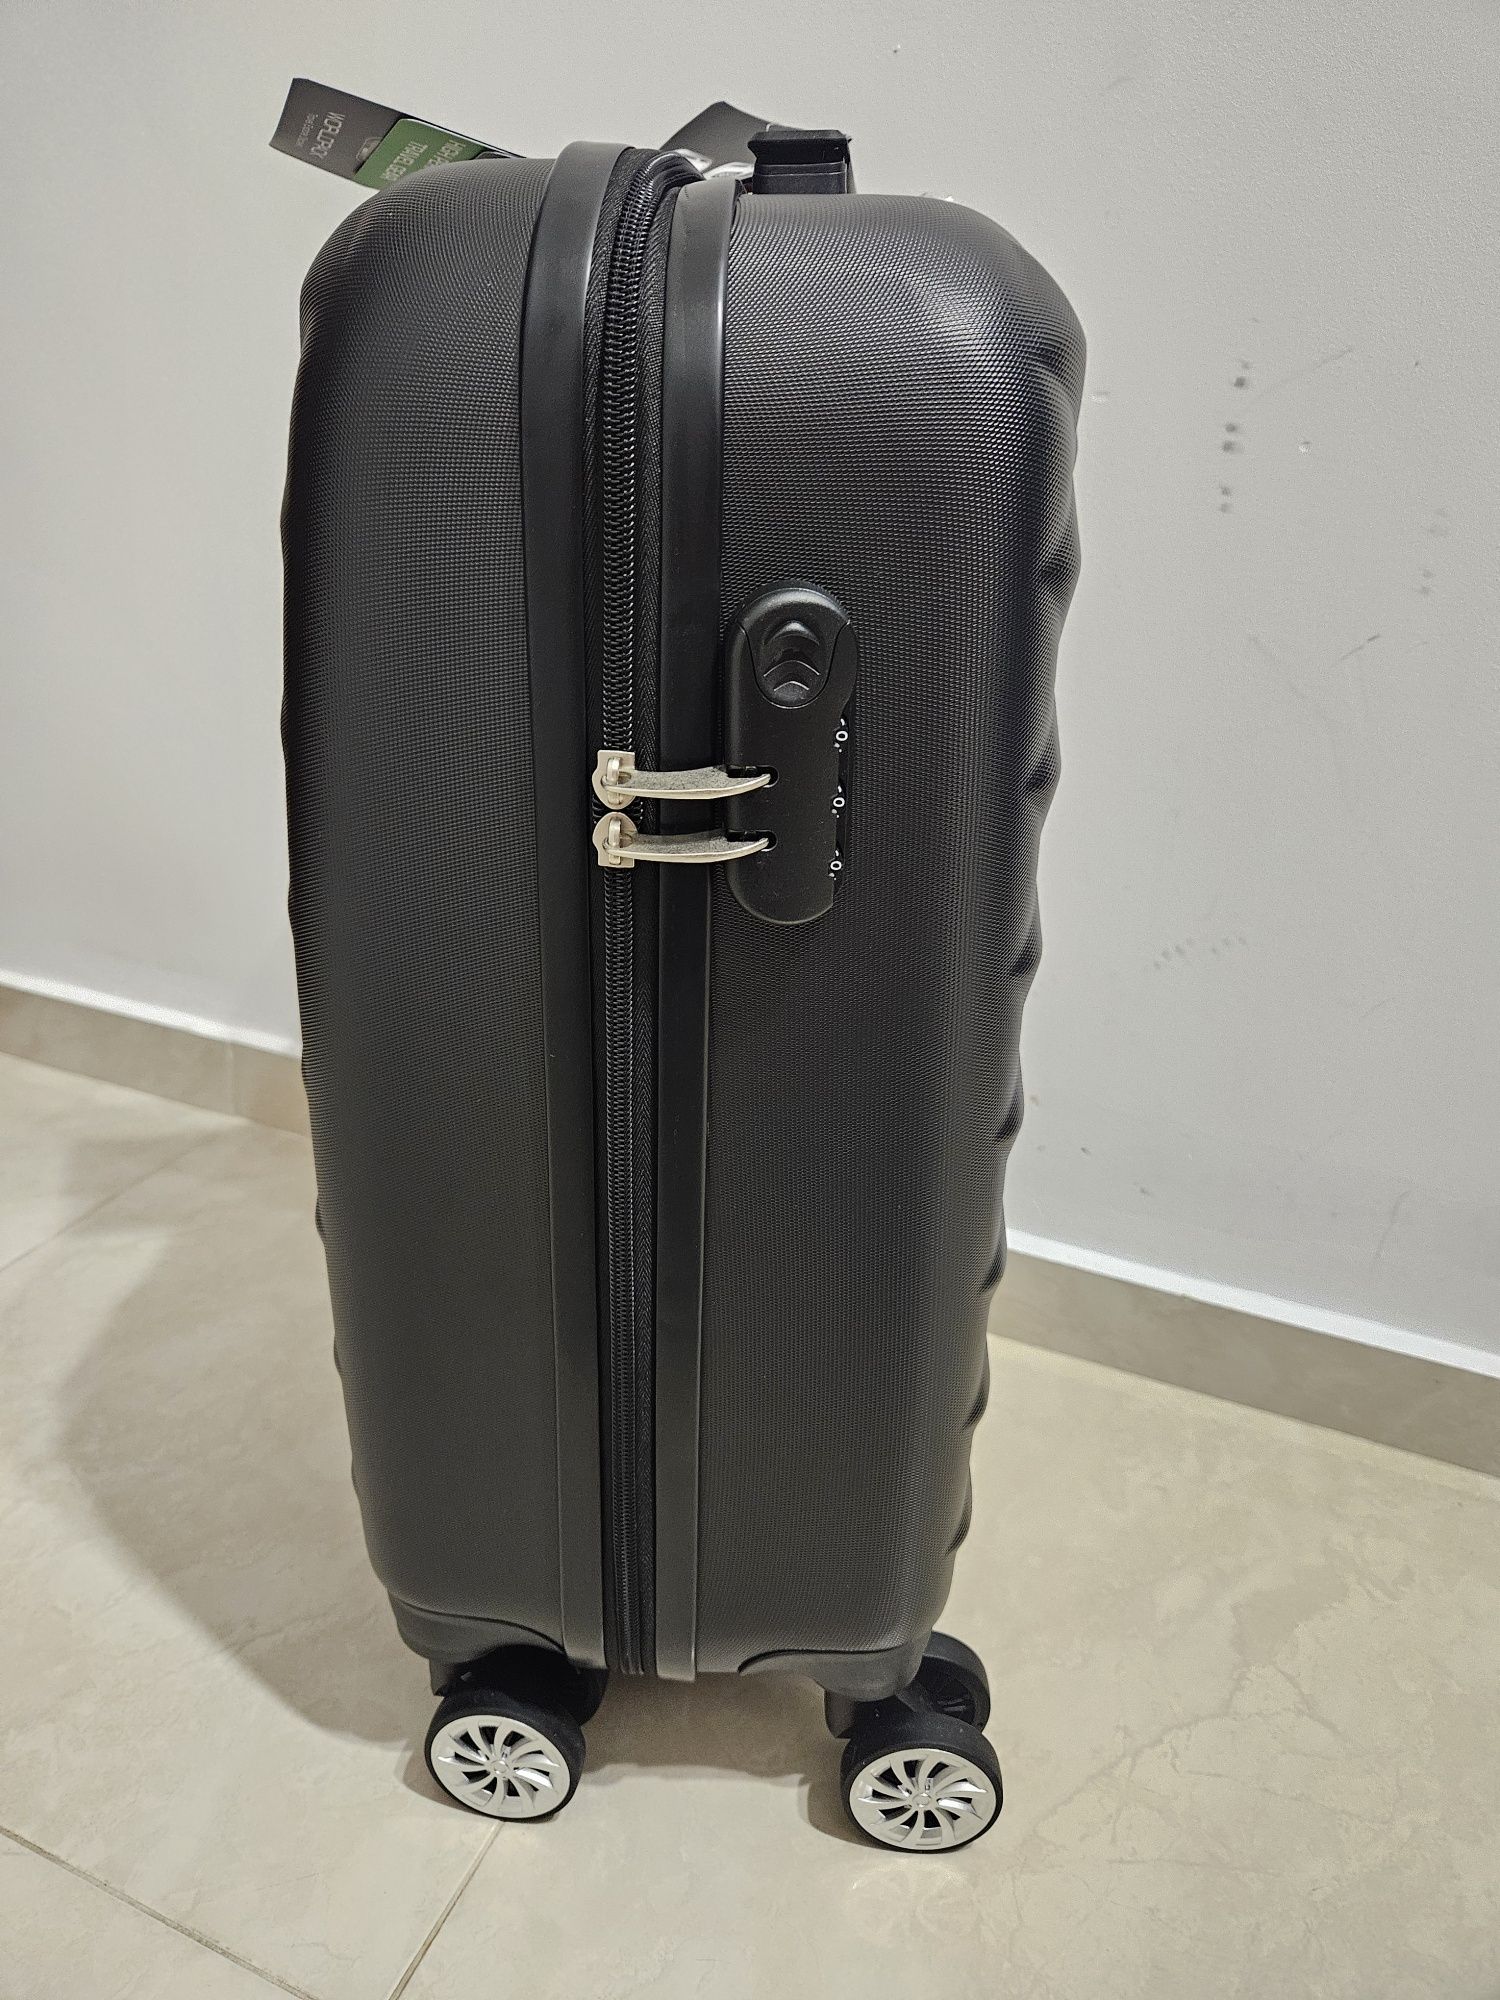 Комплект пътнически куфари WORLDPACK